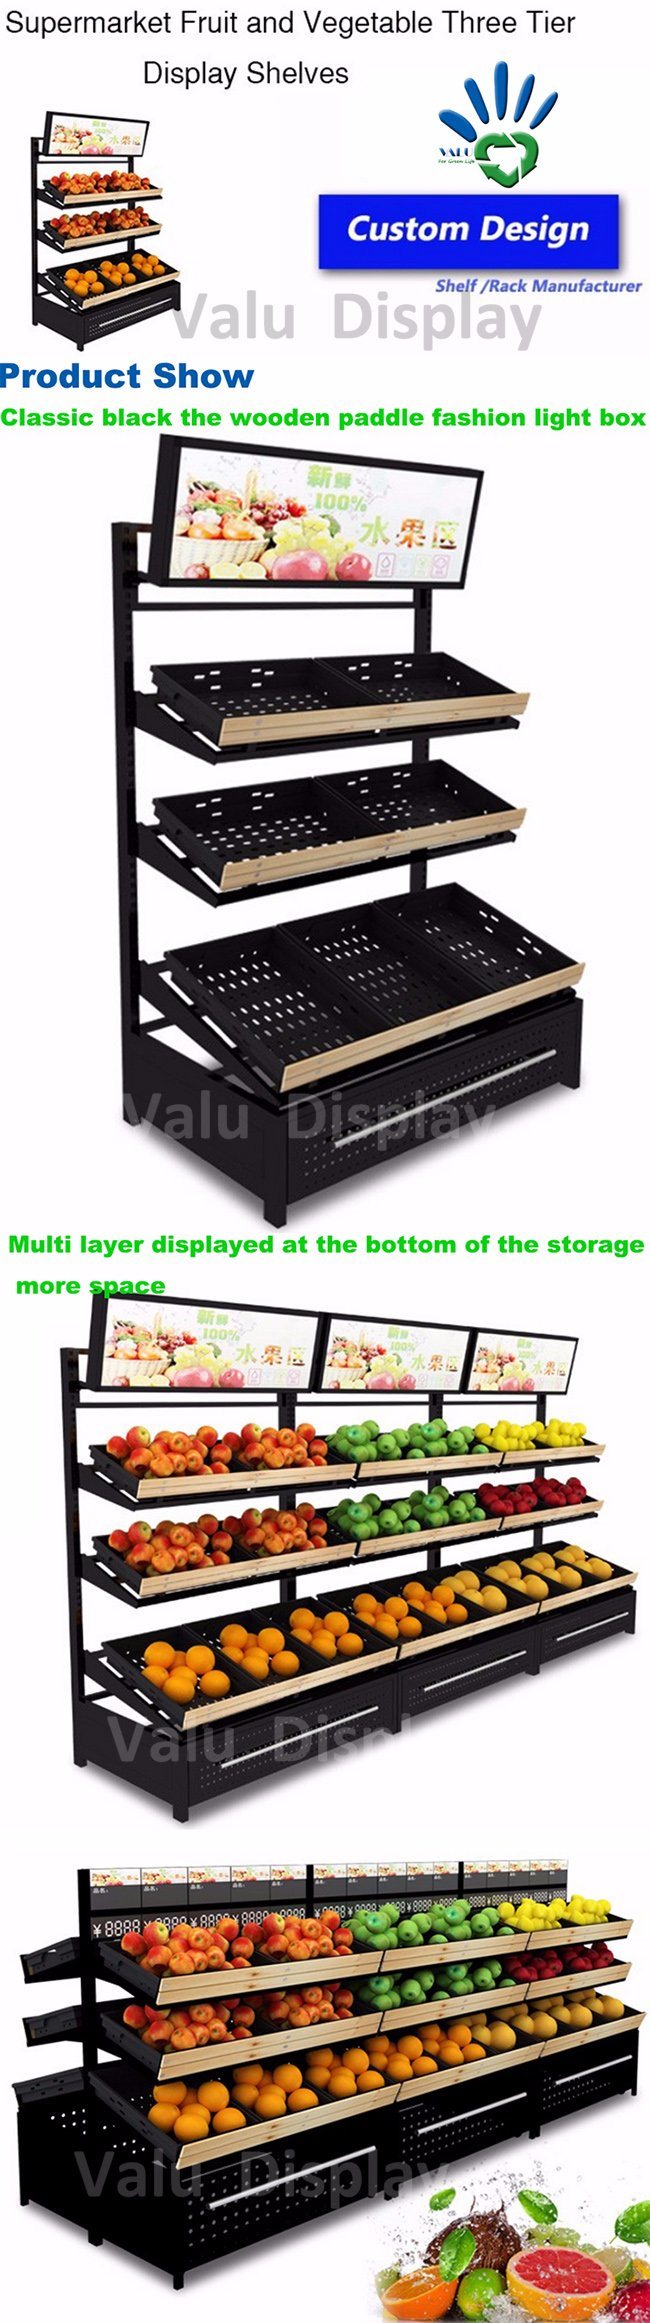 Supermarket Fruits and Vegetables Display Rack (VMS907)